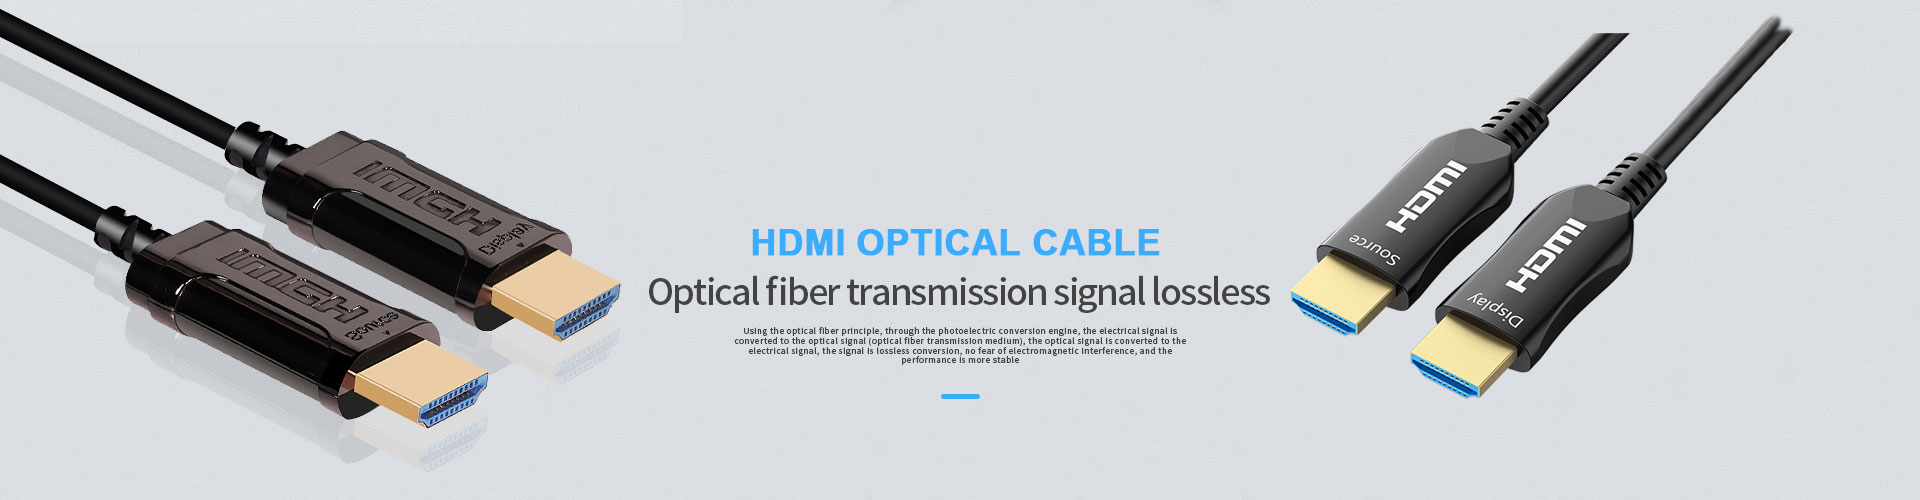 黑龙江 Fiber HDMI